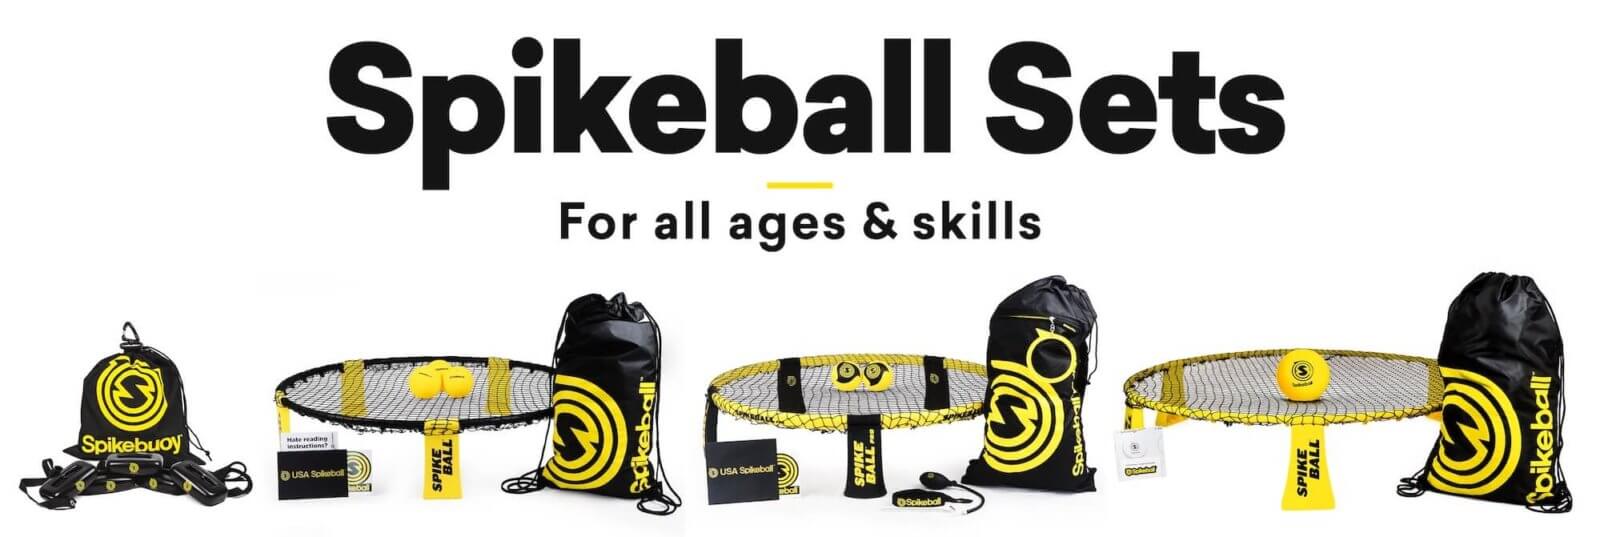 Spikeball Sets für alle Altersgruppen und Fähigkeiten